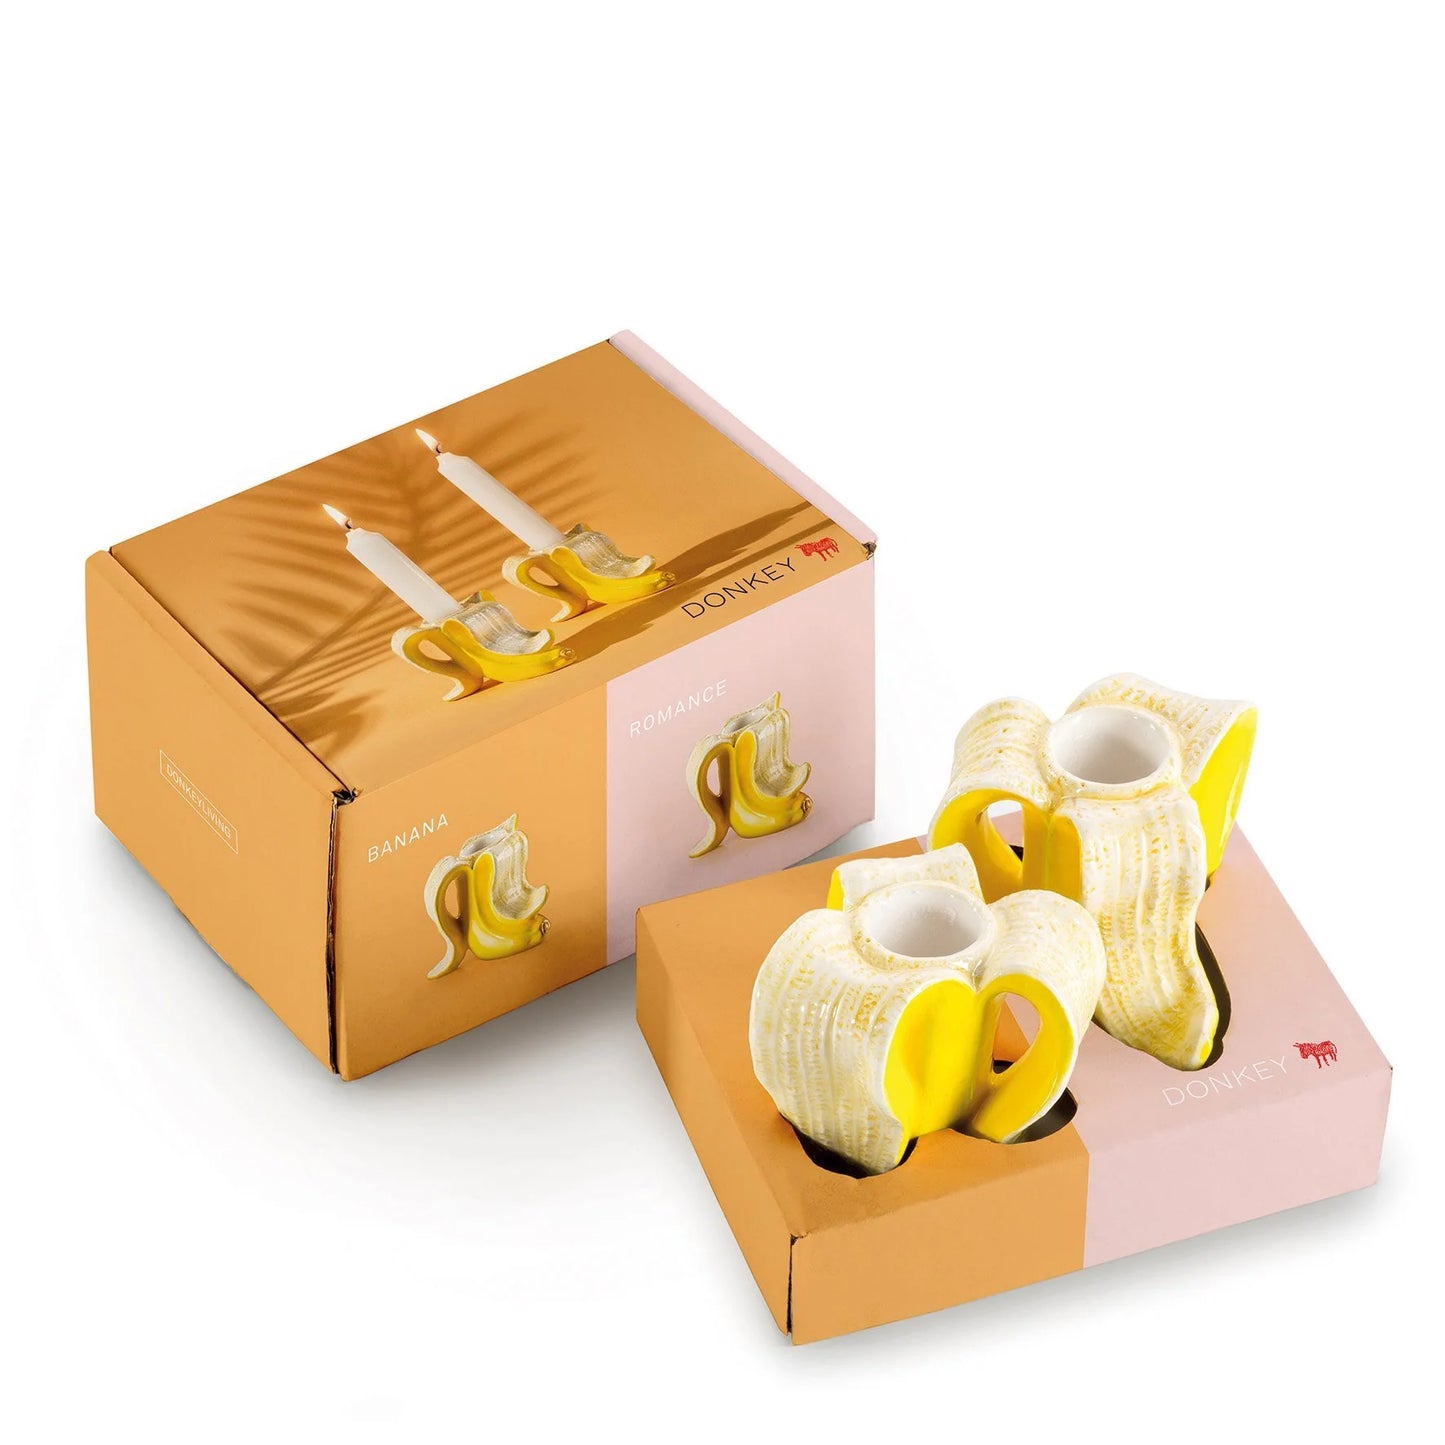 Candle holders - set of 2 - banana romance | Donkey Products